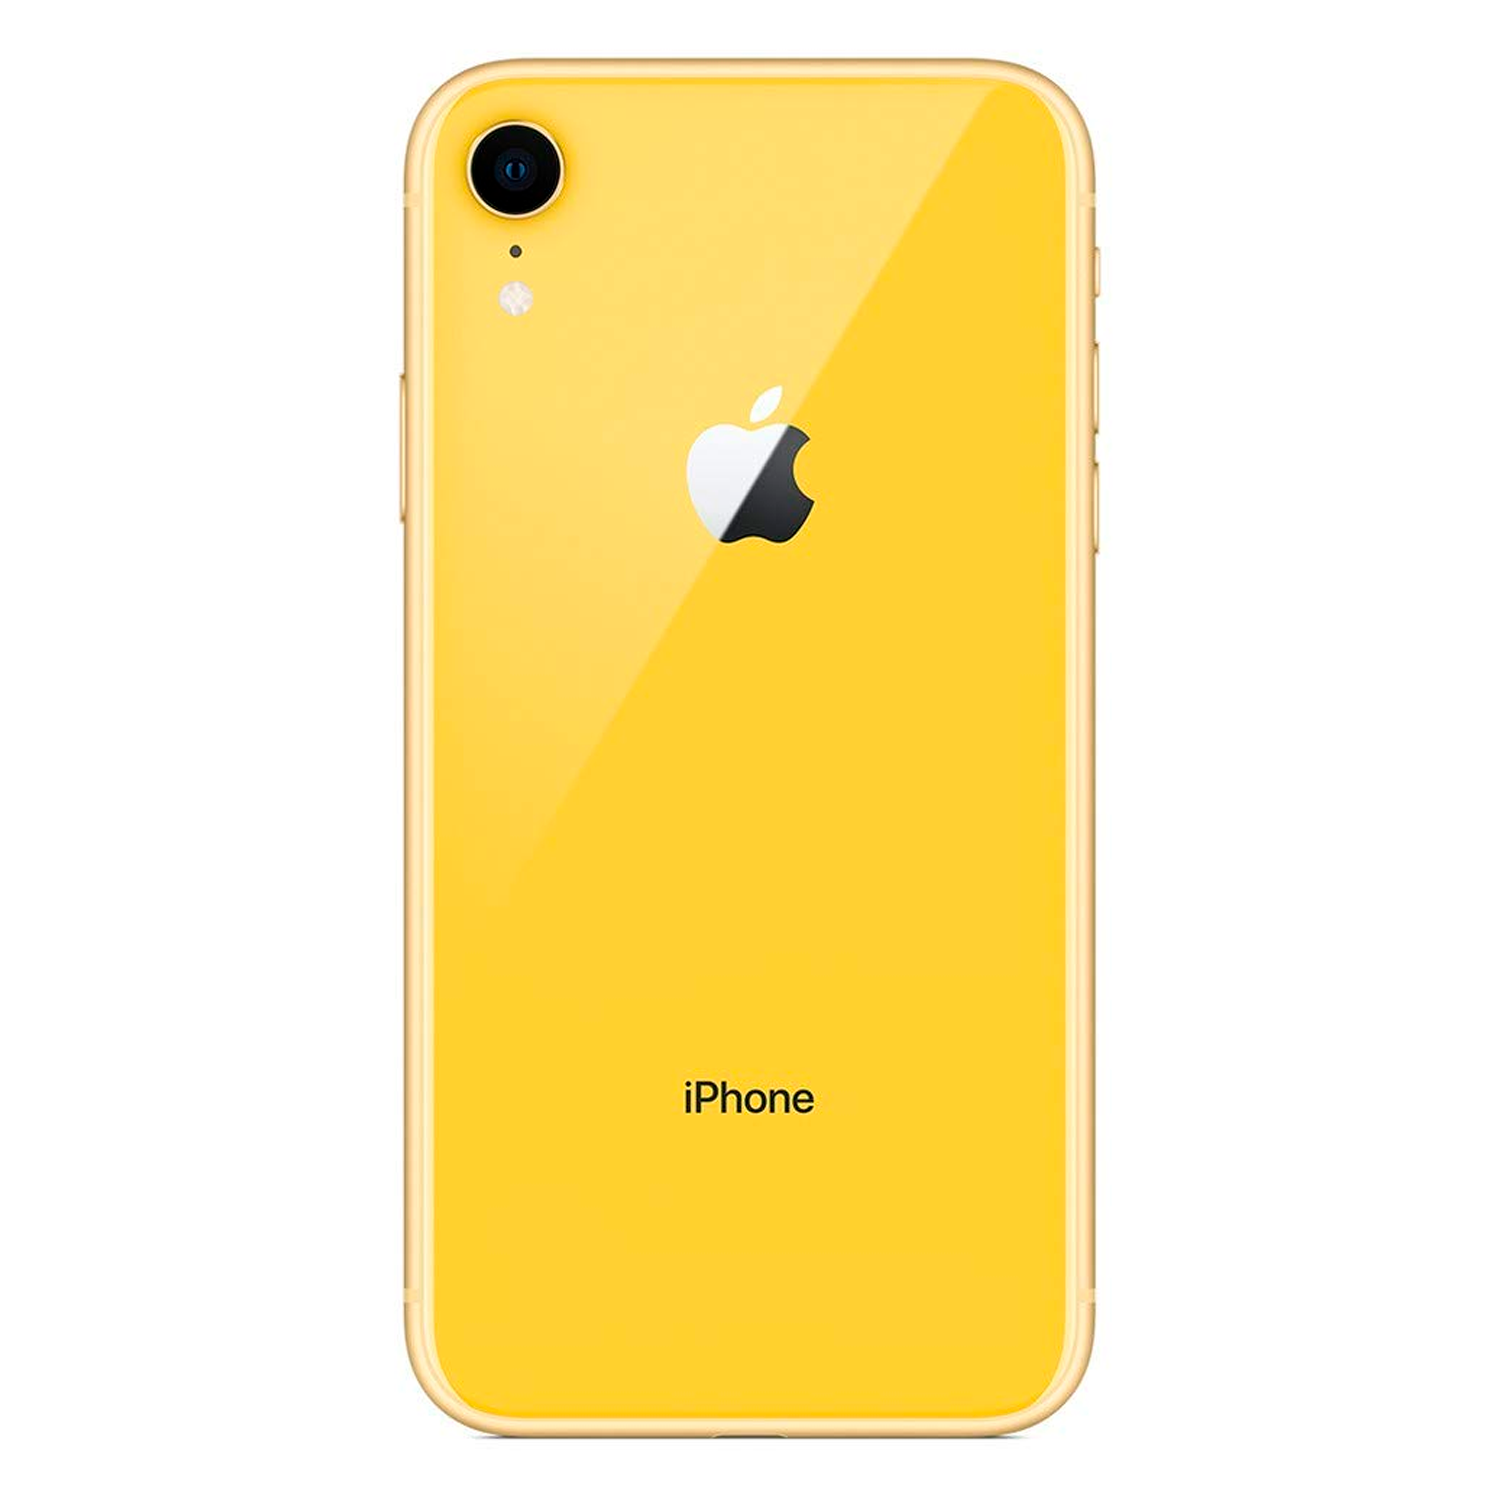 Apple iPhone XR *Swap A* A1984 128GB 3GB RAM Tela 6.1" - Amarelo (Somente Aparelho)